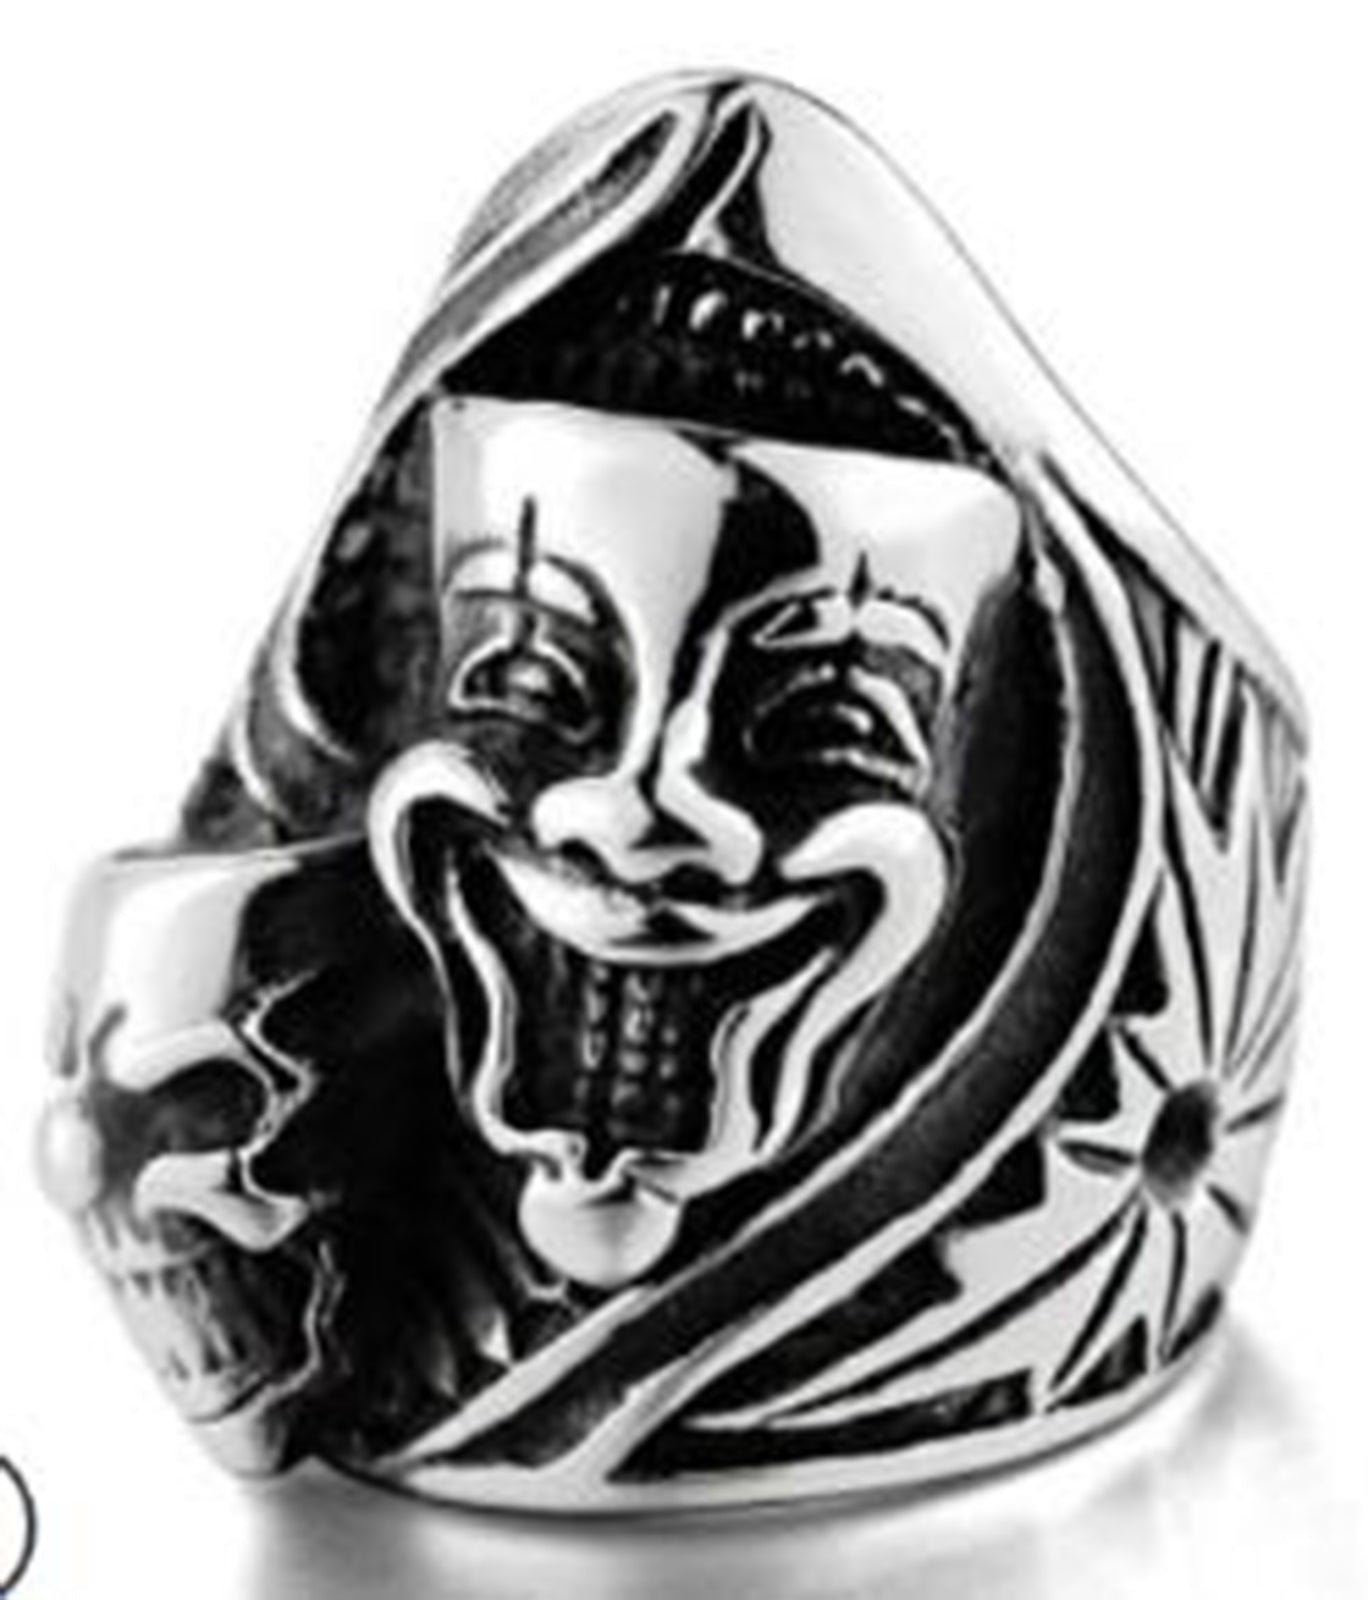 R158 Stainless Steel Joker Face Skull Biker Ring